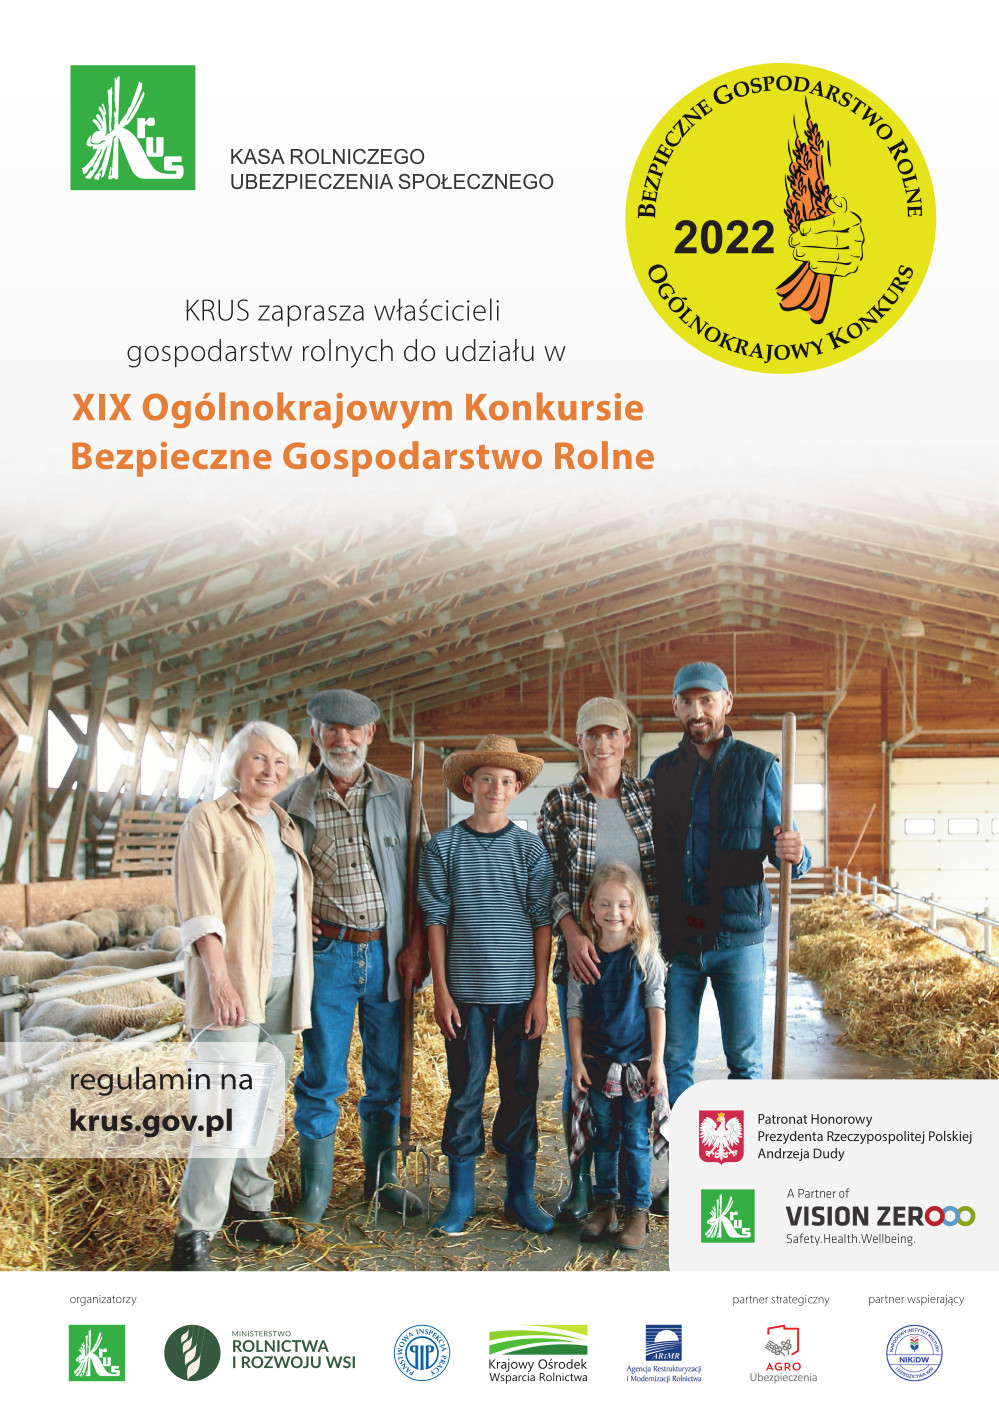 Plakat promujący XIX Ogólnokrajowy Konkurs Bezpieczne Gospodarstwo Rolne